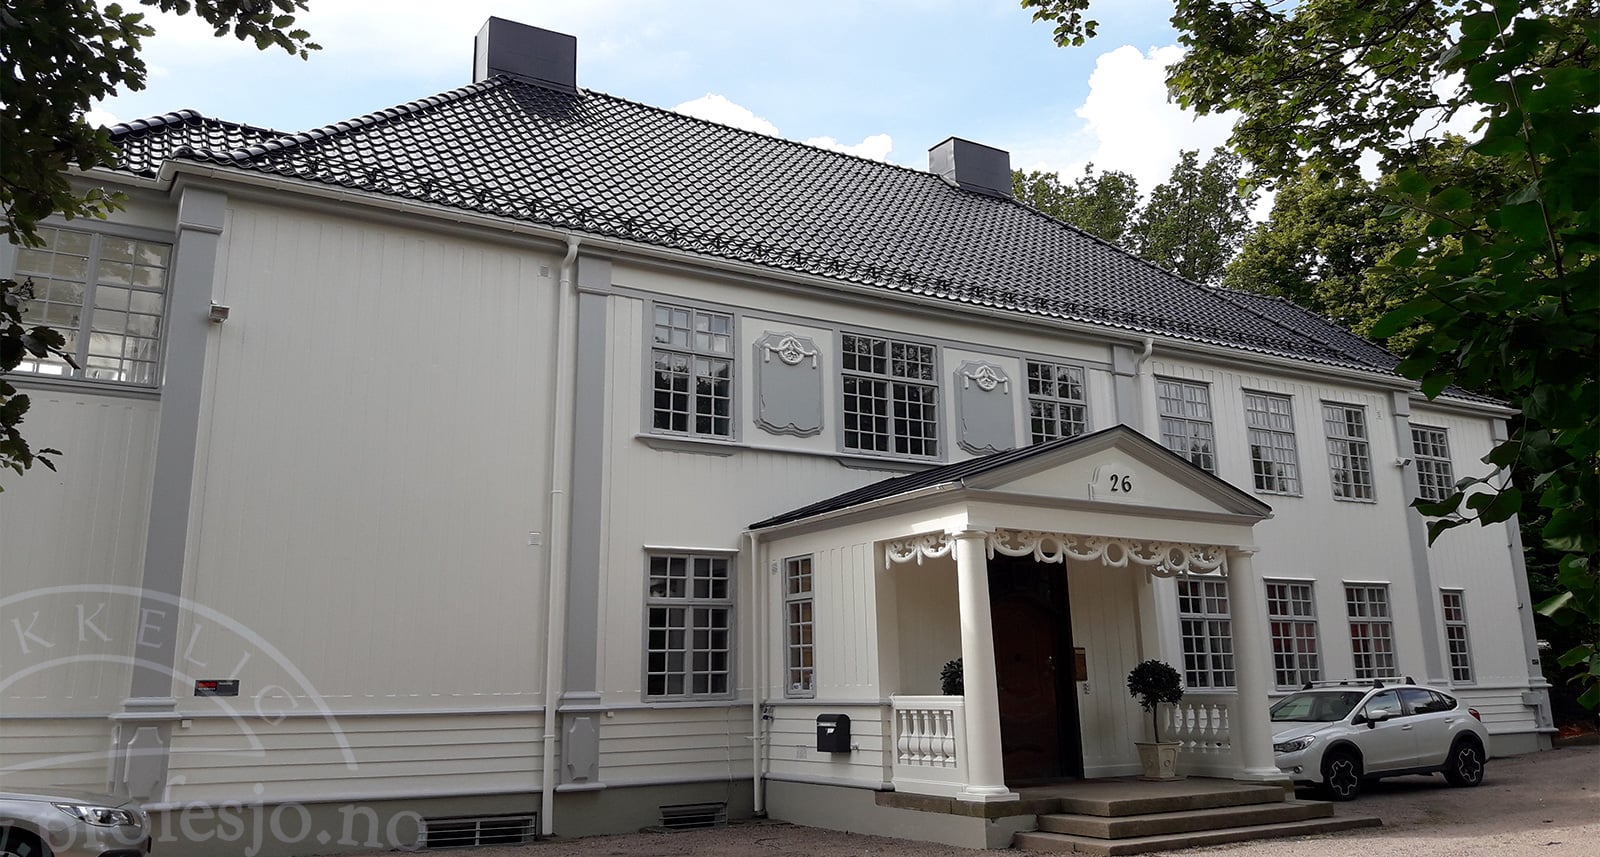 Fasademaling-på-et-stort-hus-utført-av-et-godt-malerfirma-Oslo